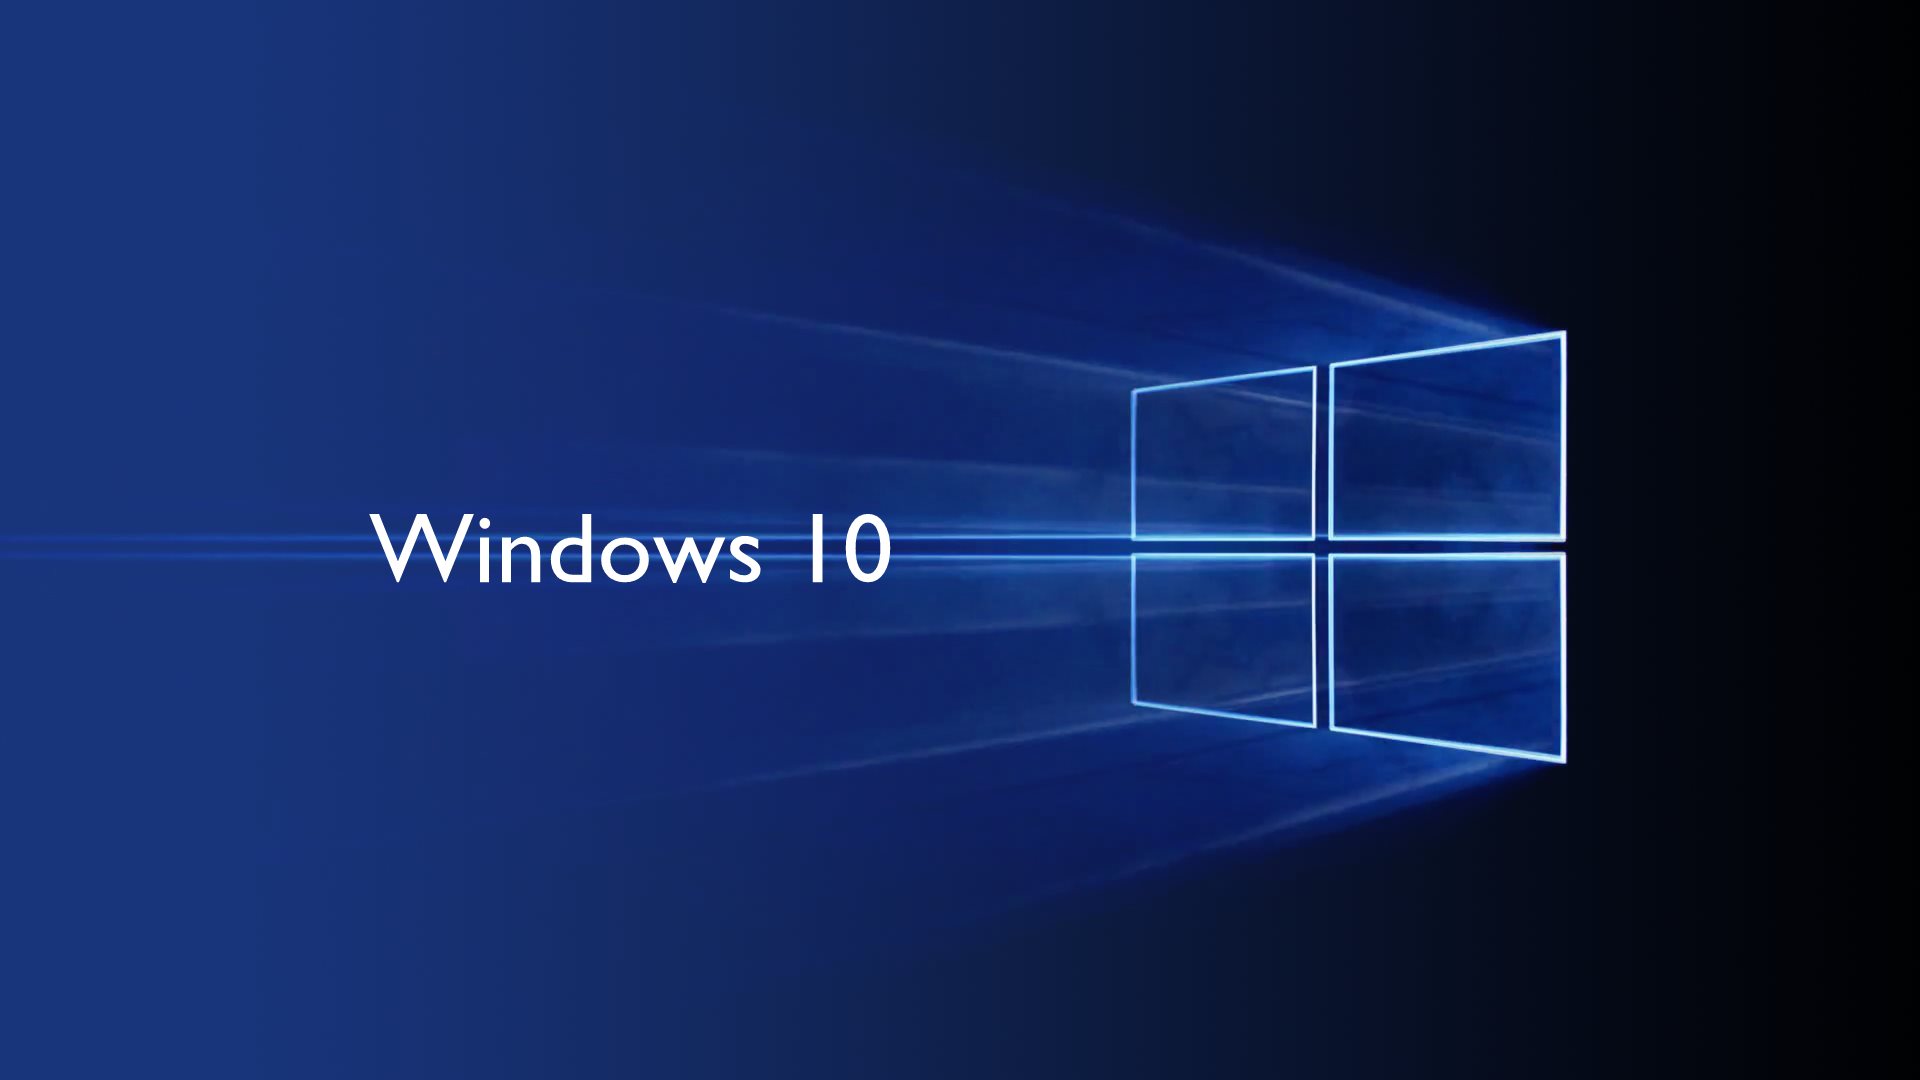 Personalizar y ajustar escritorio de Windows 10 - Blog InfoComputer